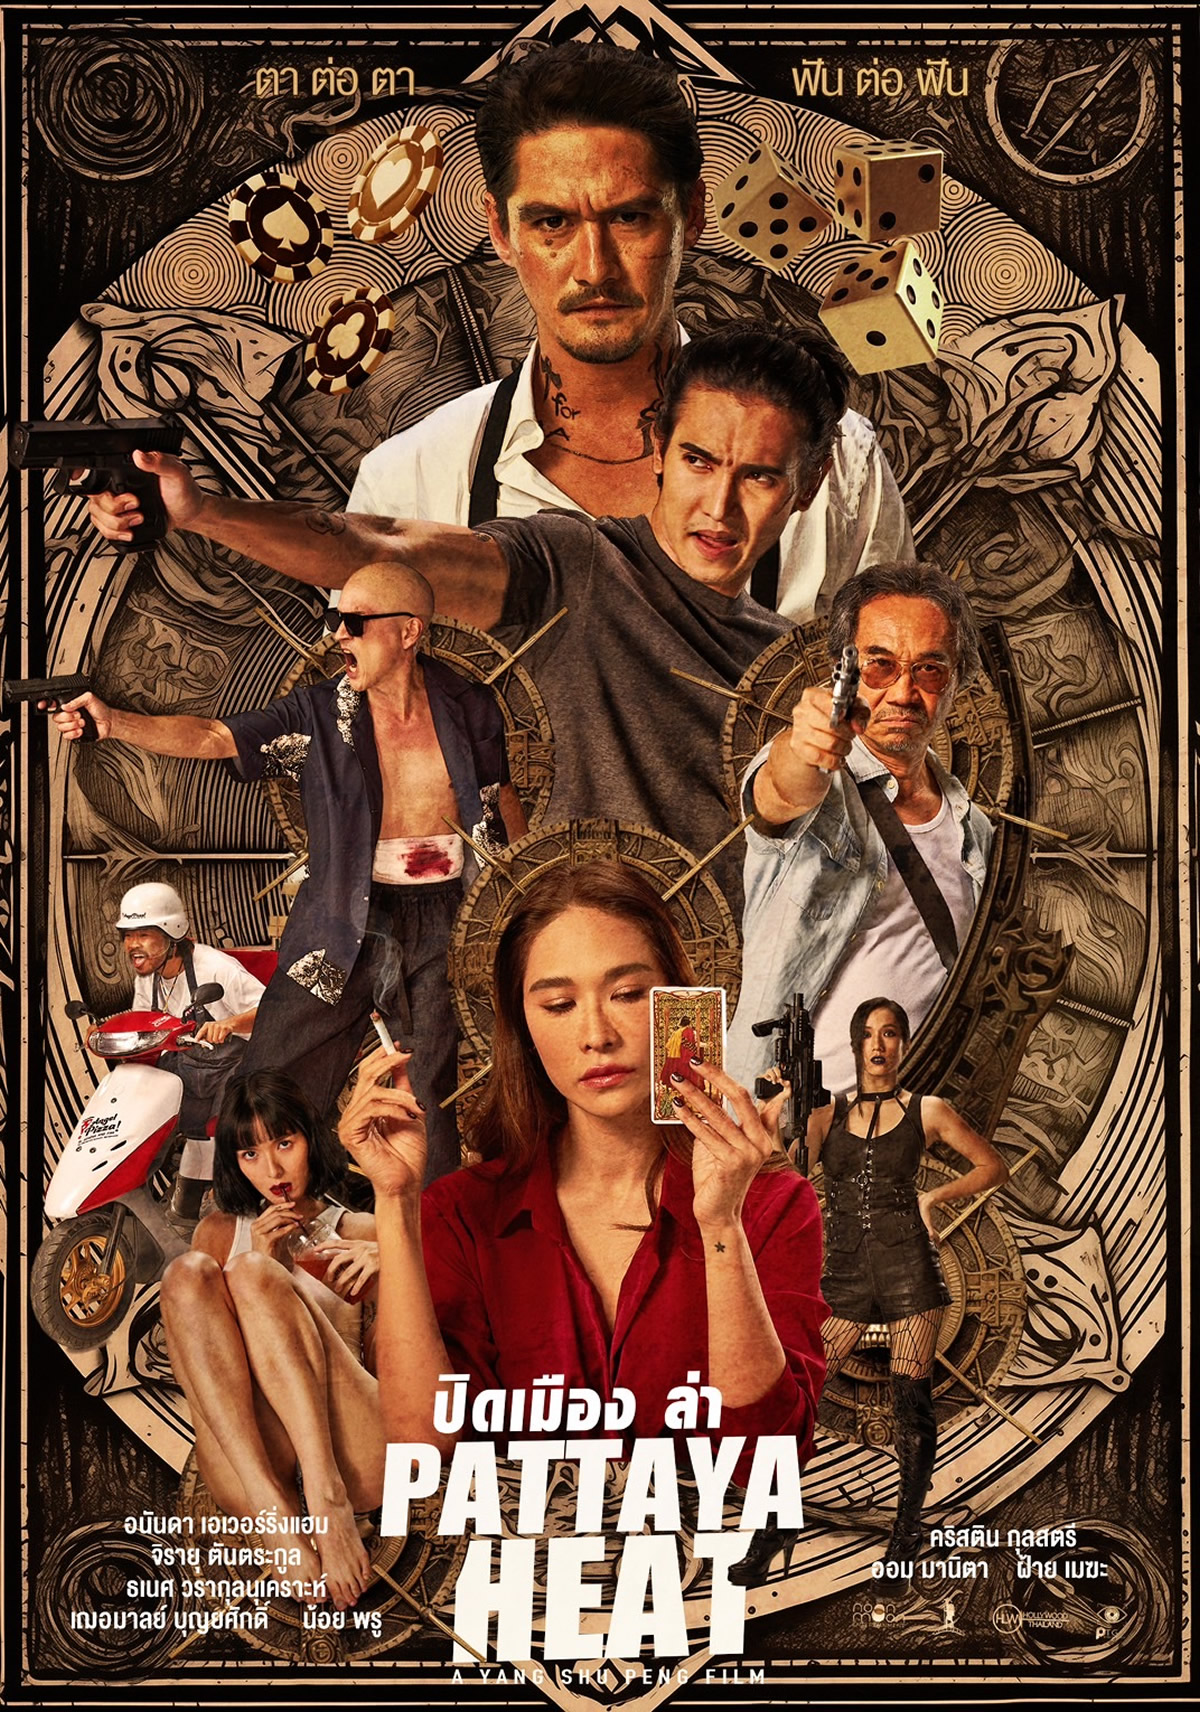 パタヤが舞台のタイ映画「Pattaya Heat」、2月8日からタイで劇場公開